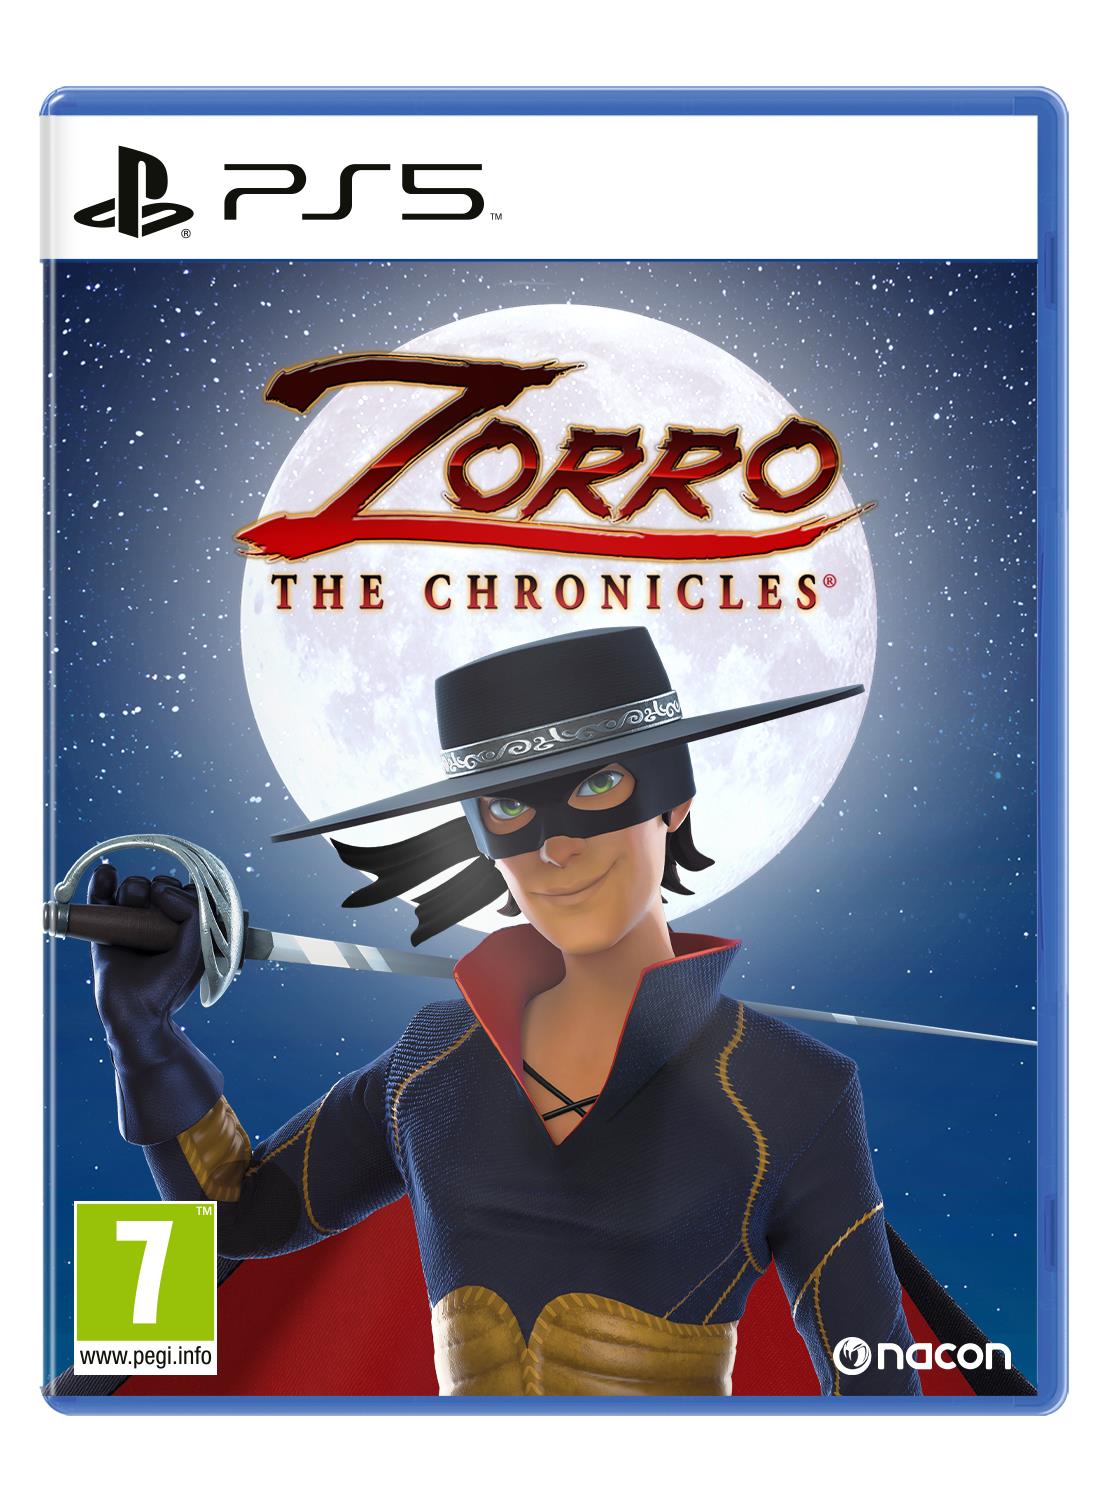 Nacon Videogioco Zorro The